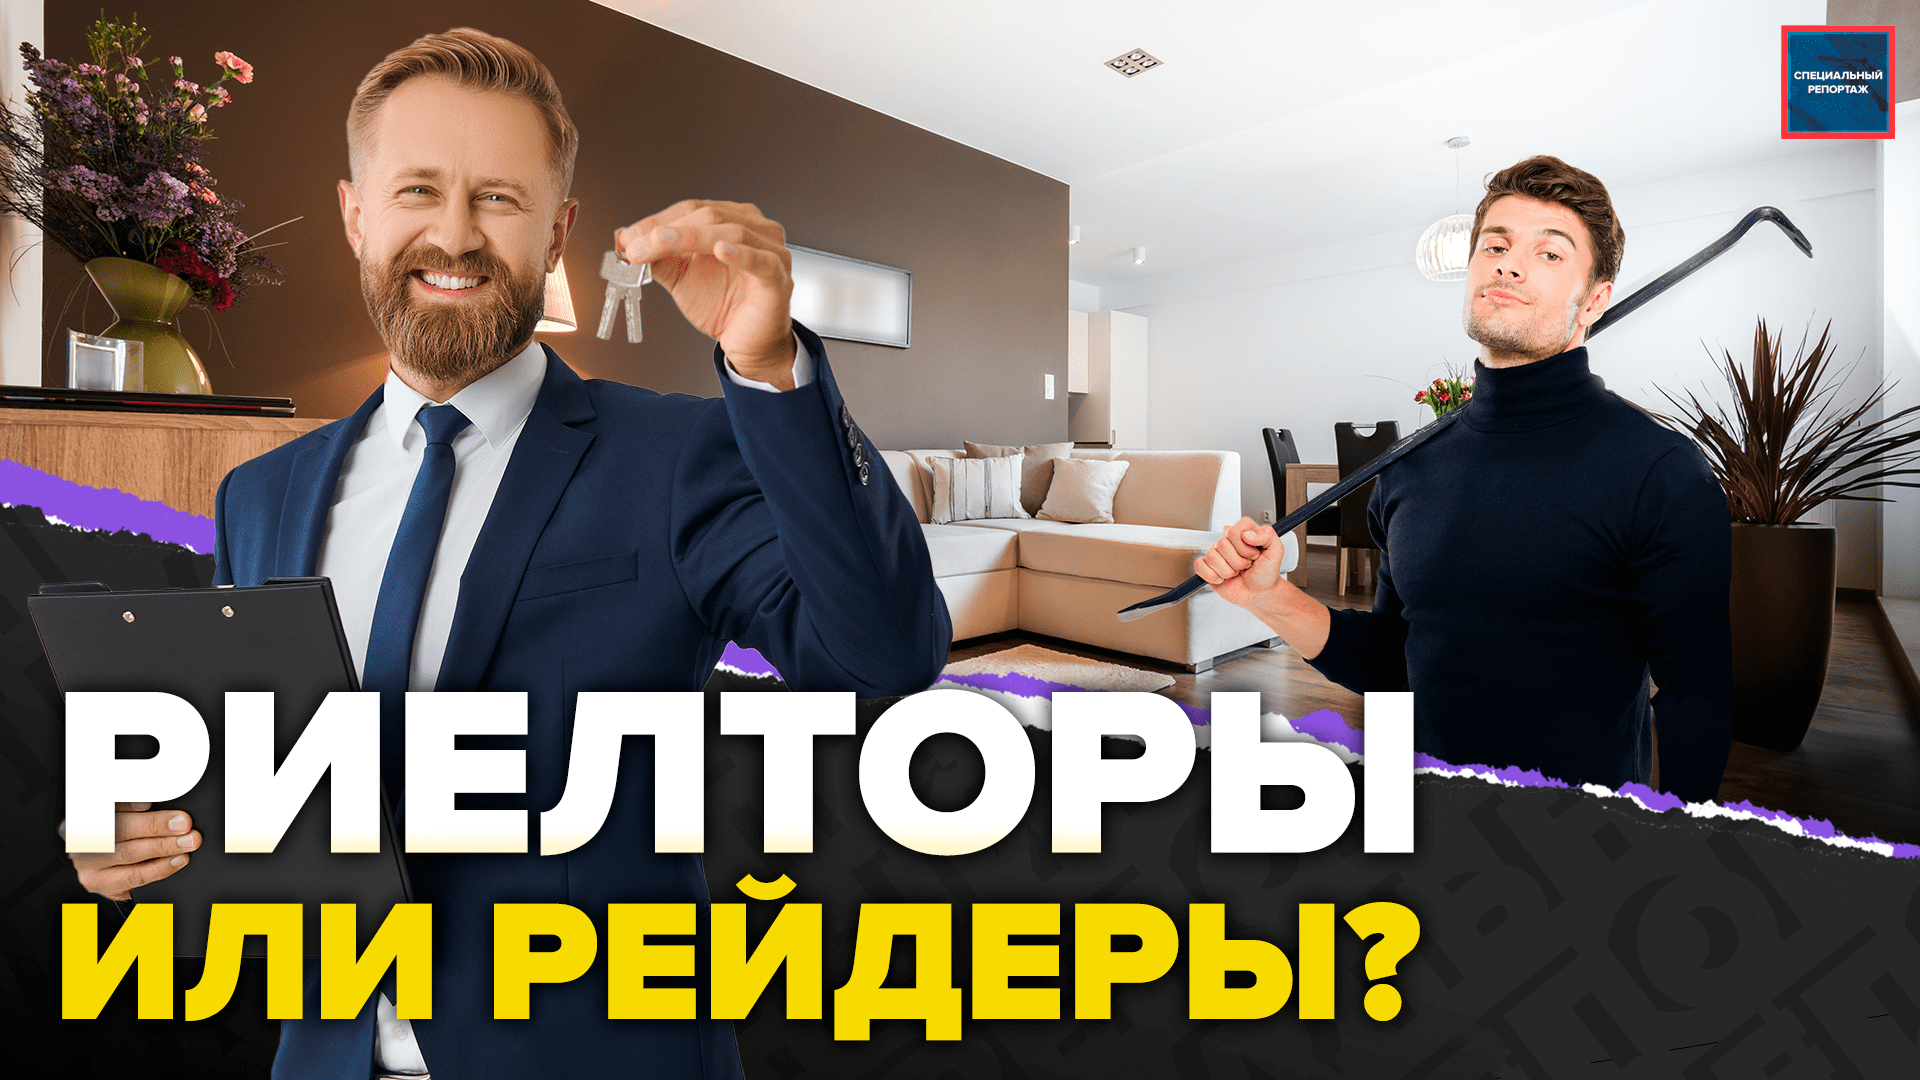 Кто забирает квартиры у москвичей? | Как продают квартиры с жильцами? | Специальный репортаж